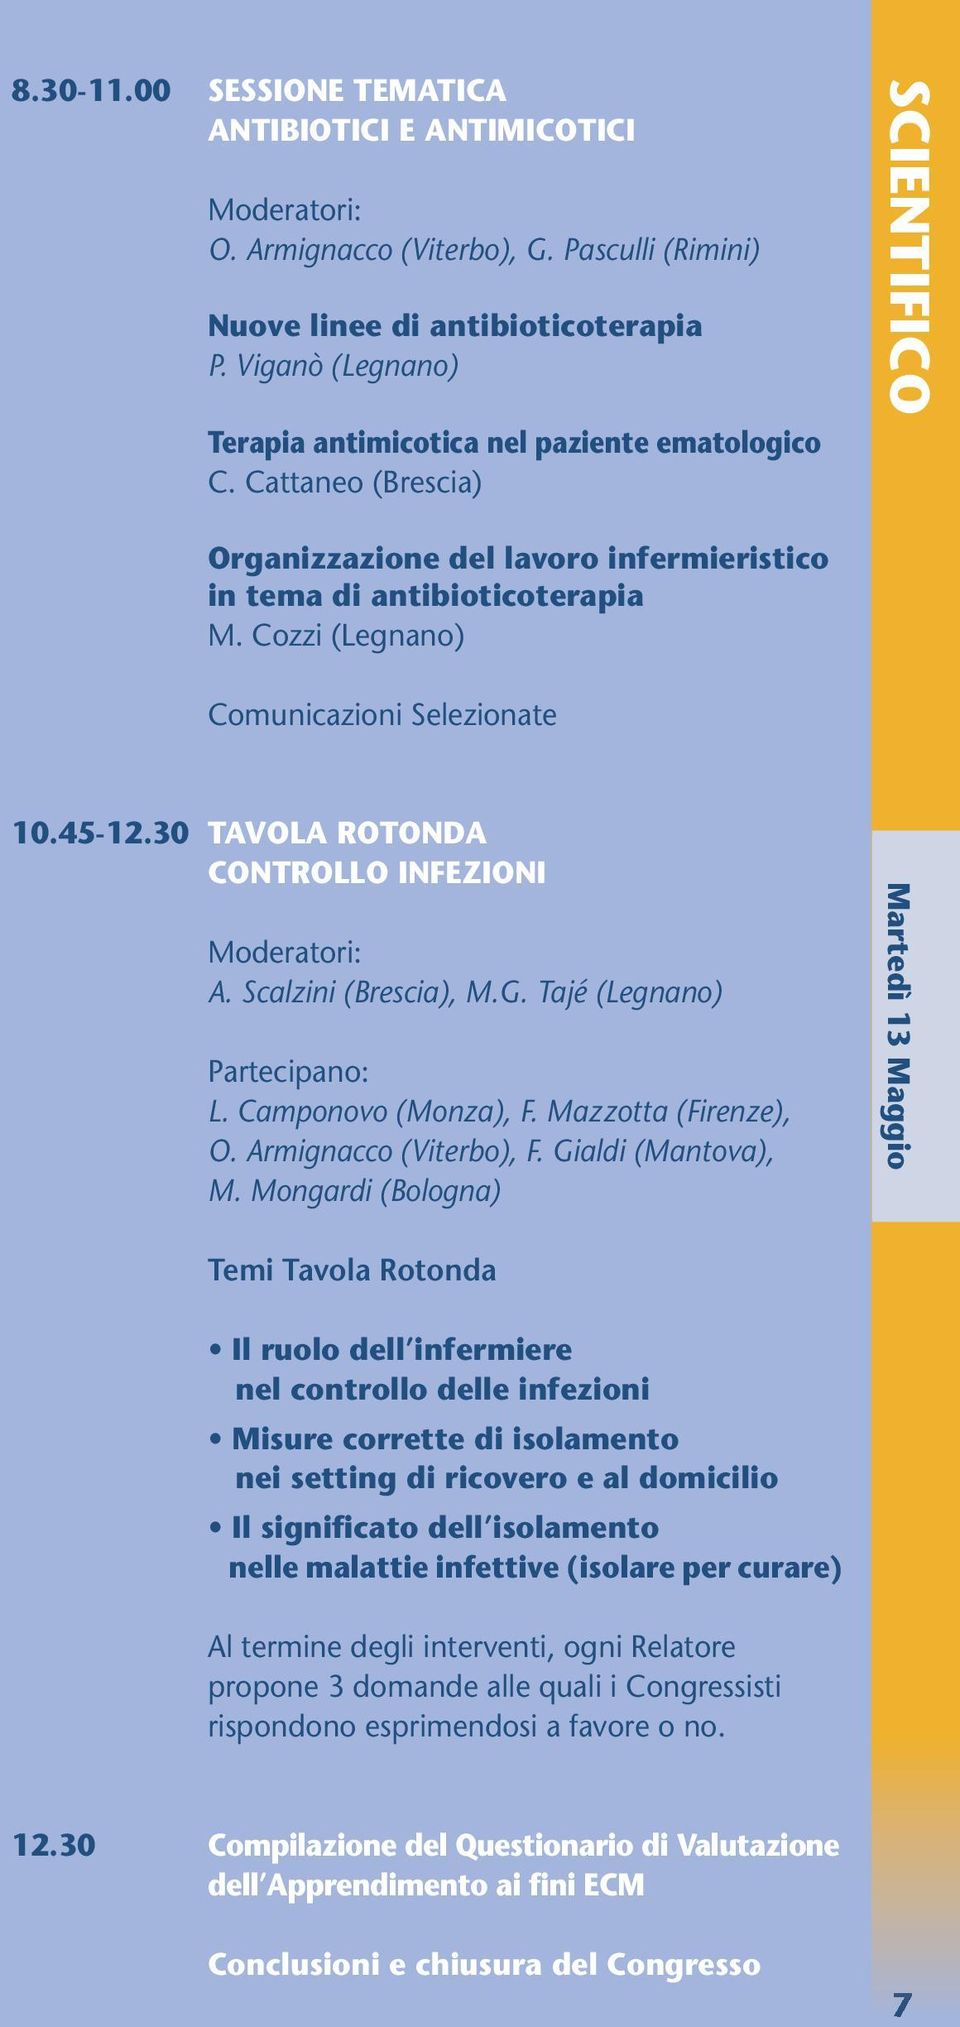 Cozzi (Legnano) Comunicazioni Selezionate 10.45-12.30 TAVOLA ROTONDA CONTROLLO INFEZIONI A. Scalzini (Brescia), M.G. Tajé (Legnano) Partecipano: L. Camponovo (Monza), F. Mazzotta (Firenze), O.